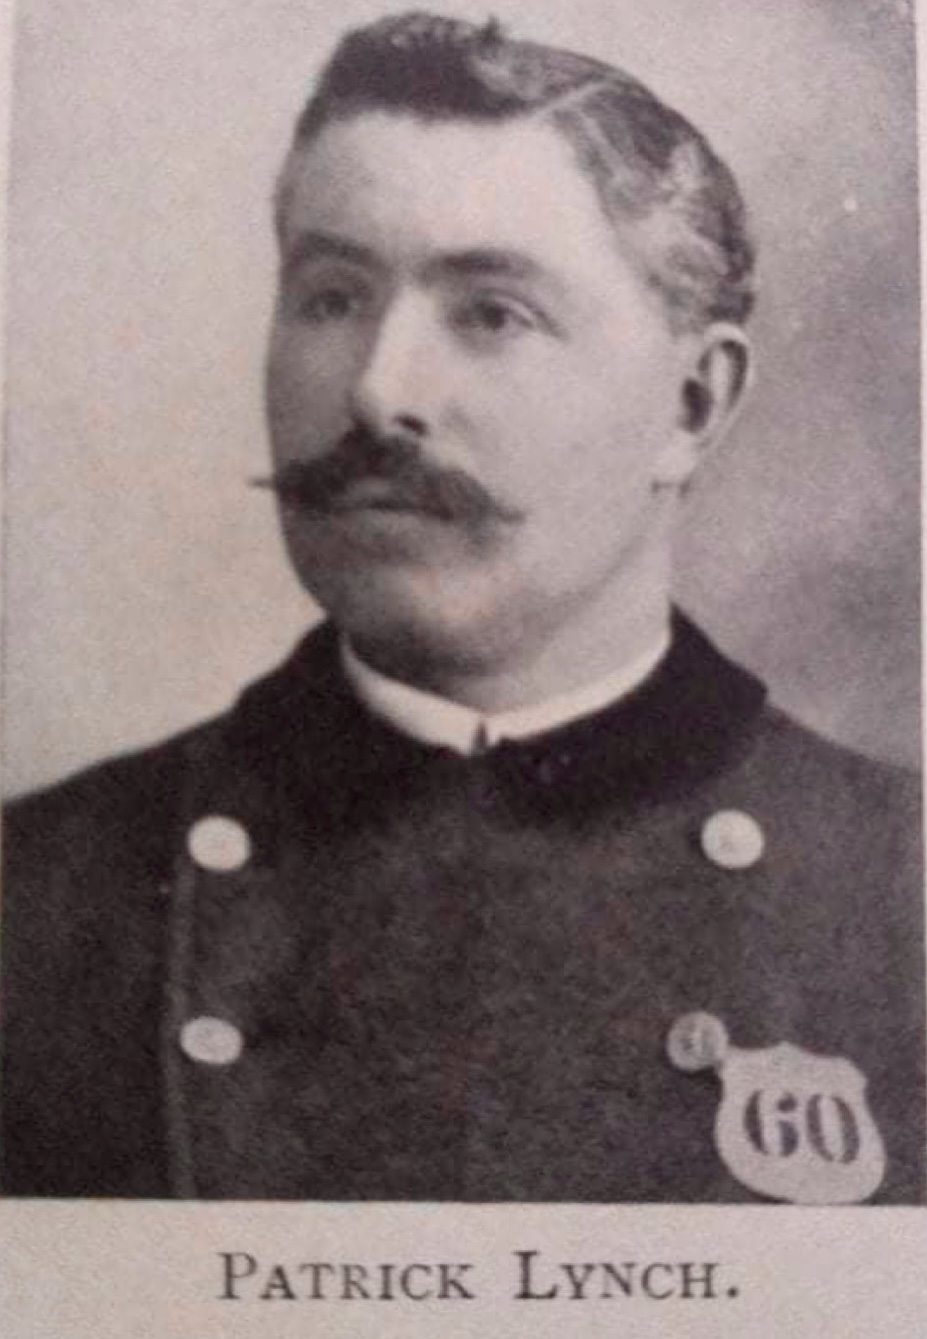 Patrick Lynch, born in Ireland in 1868;  appointed patrolman June 5, 1905.